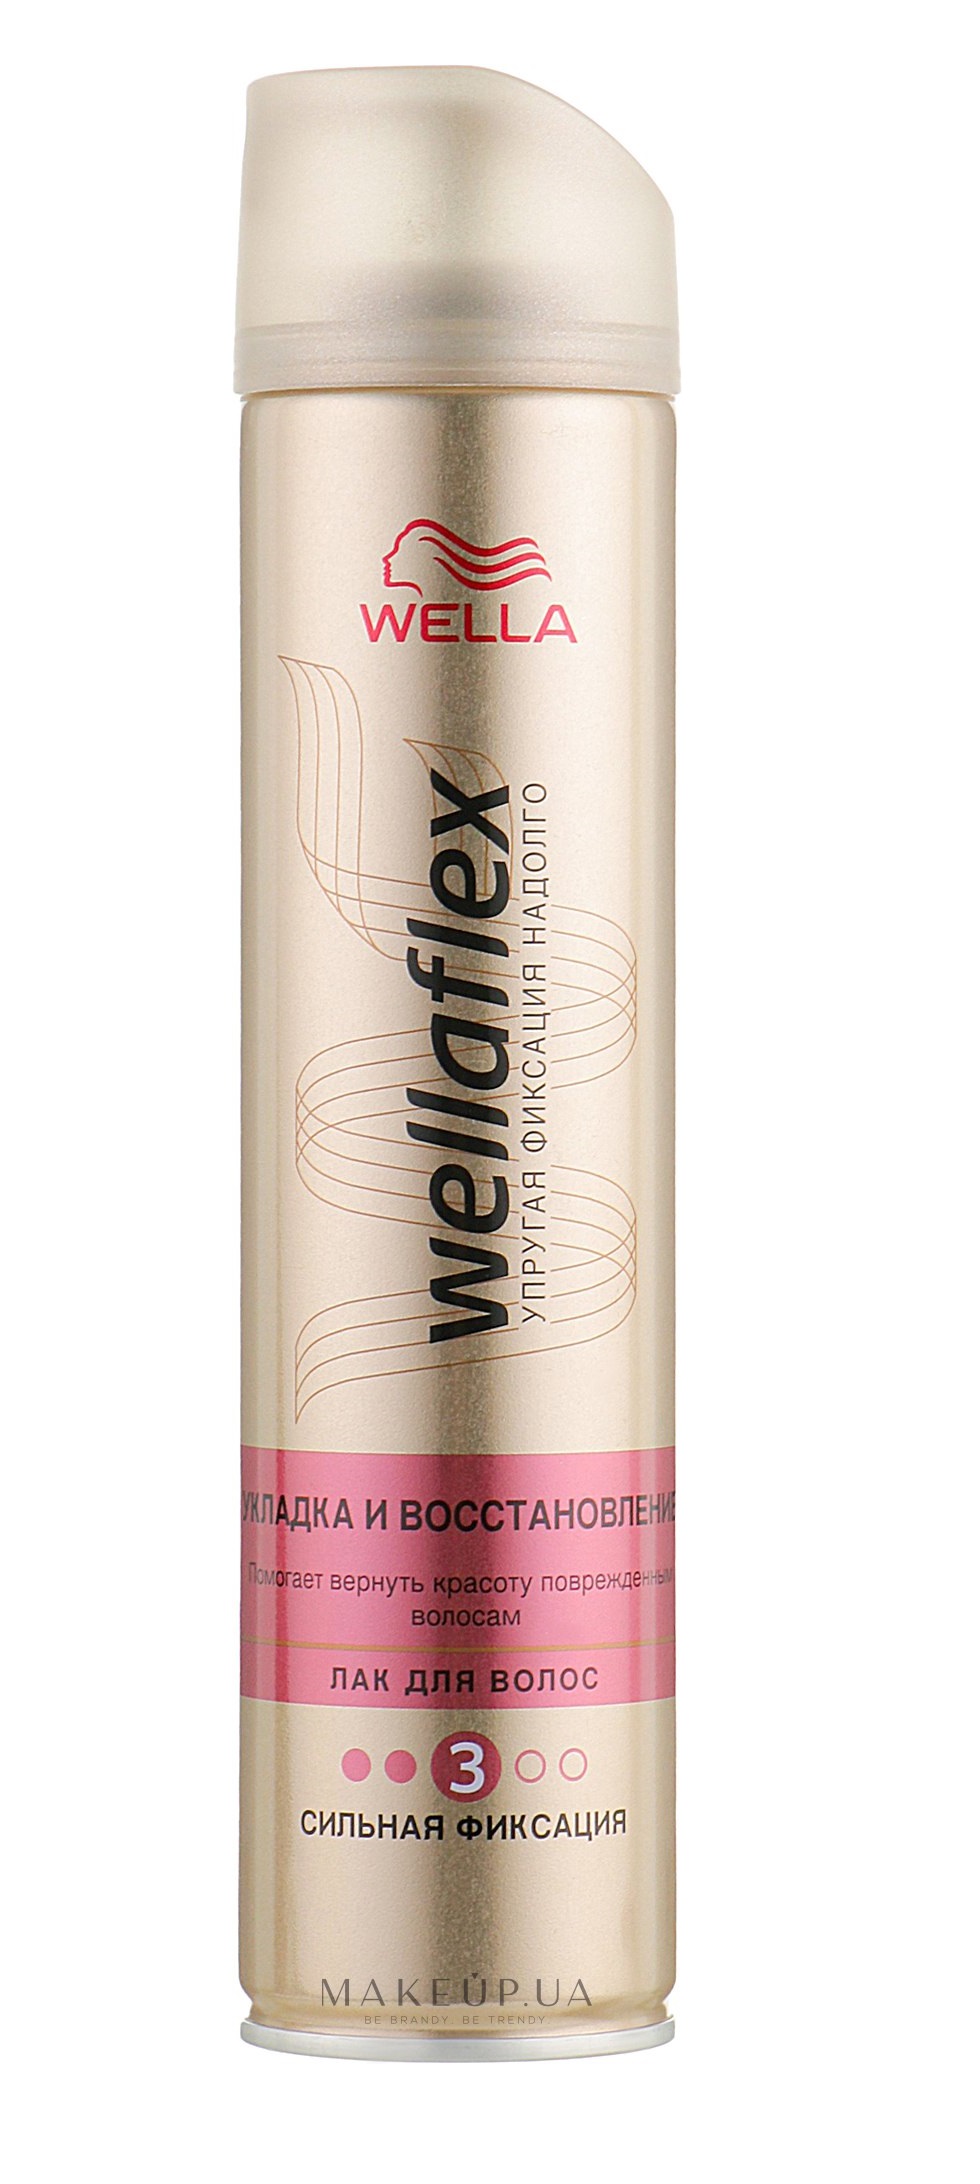 Лак для волос Wellaflex Укладка и восстановление Сильной фиксации, 250 мл - фото 1